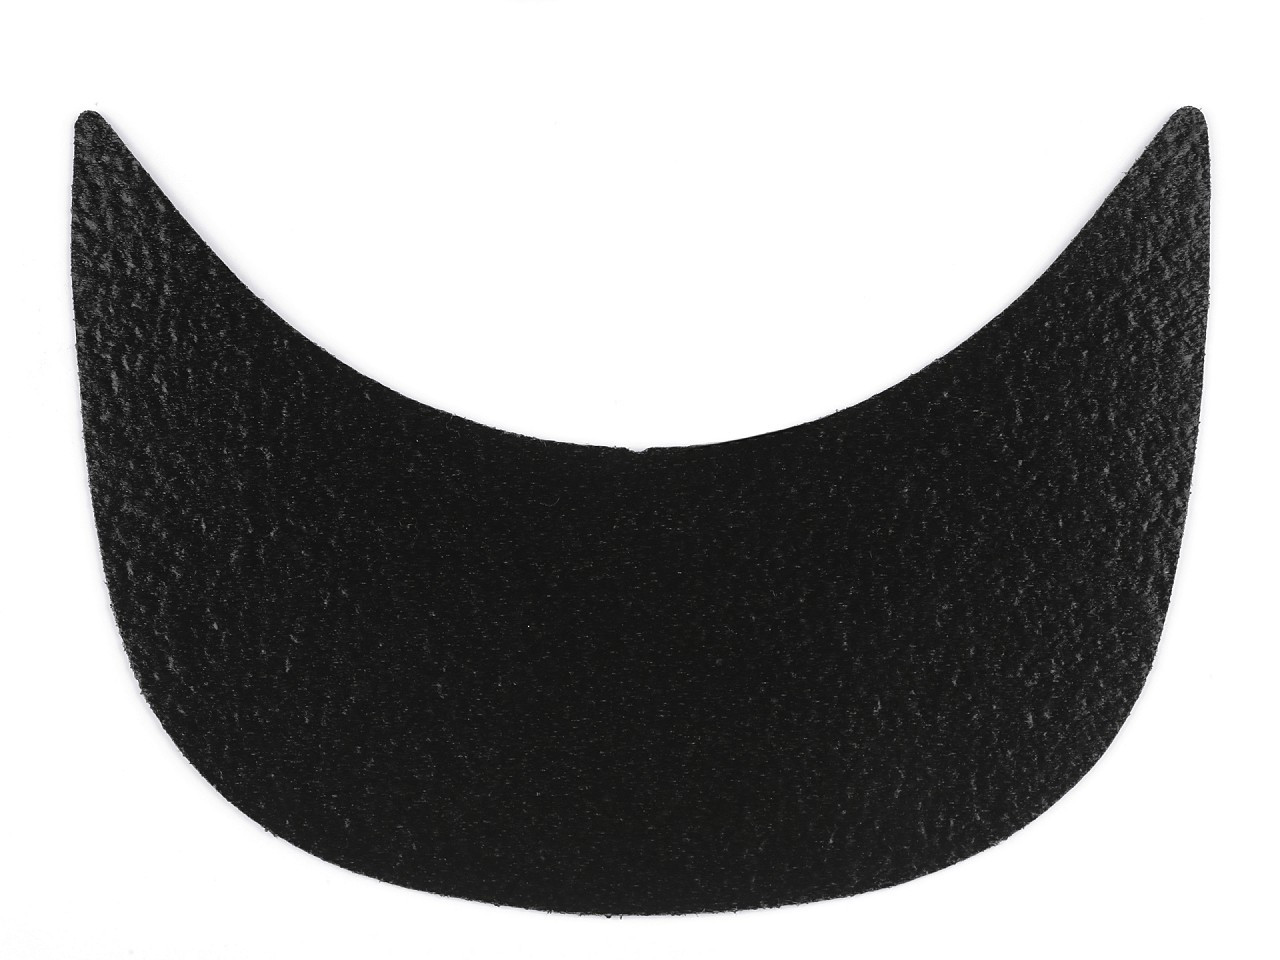 Kšilt - polotovar, šíře 75 mm, barva 2 černá